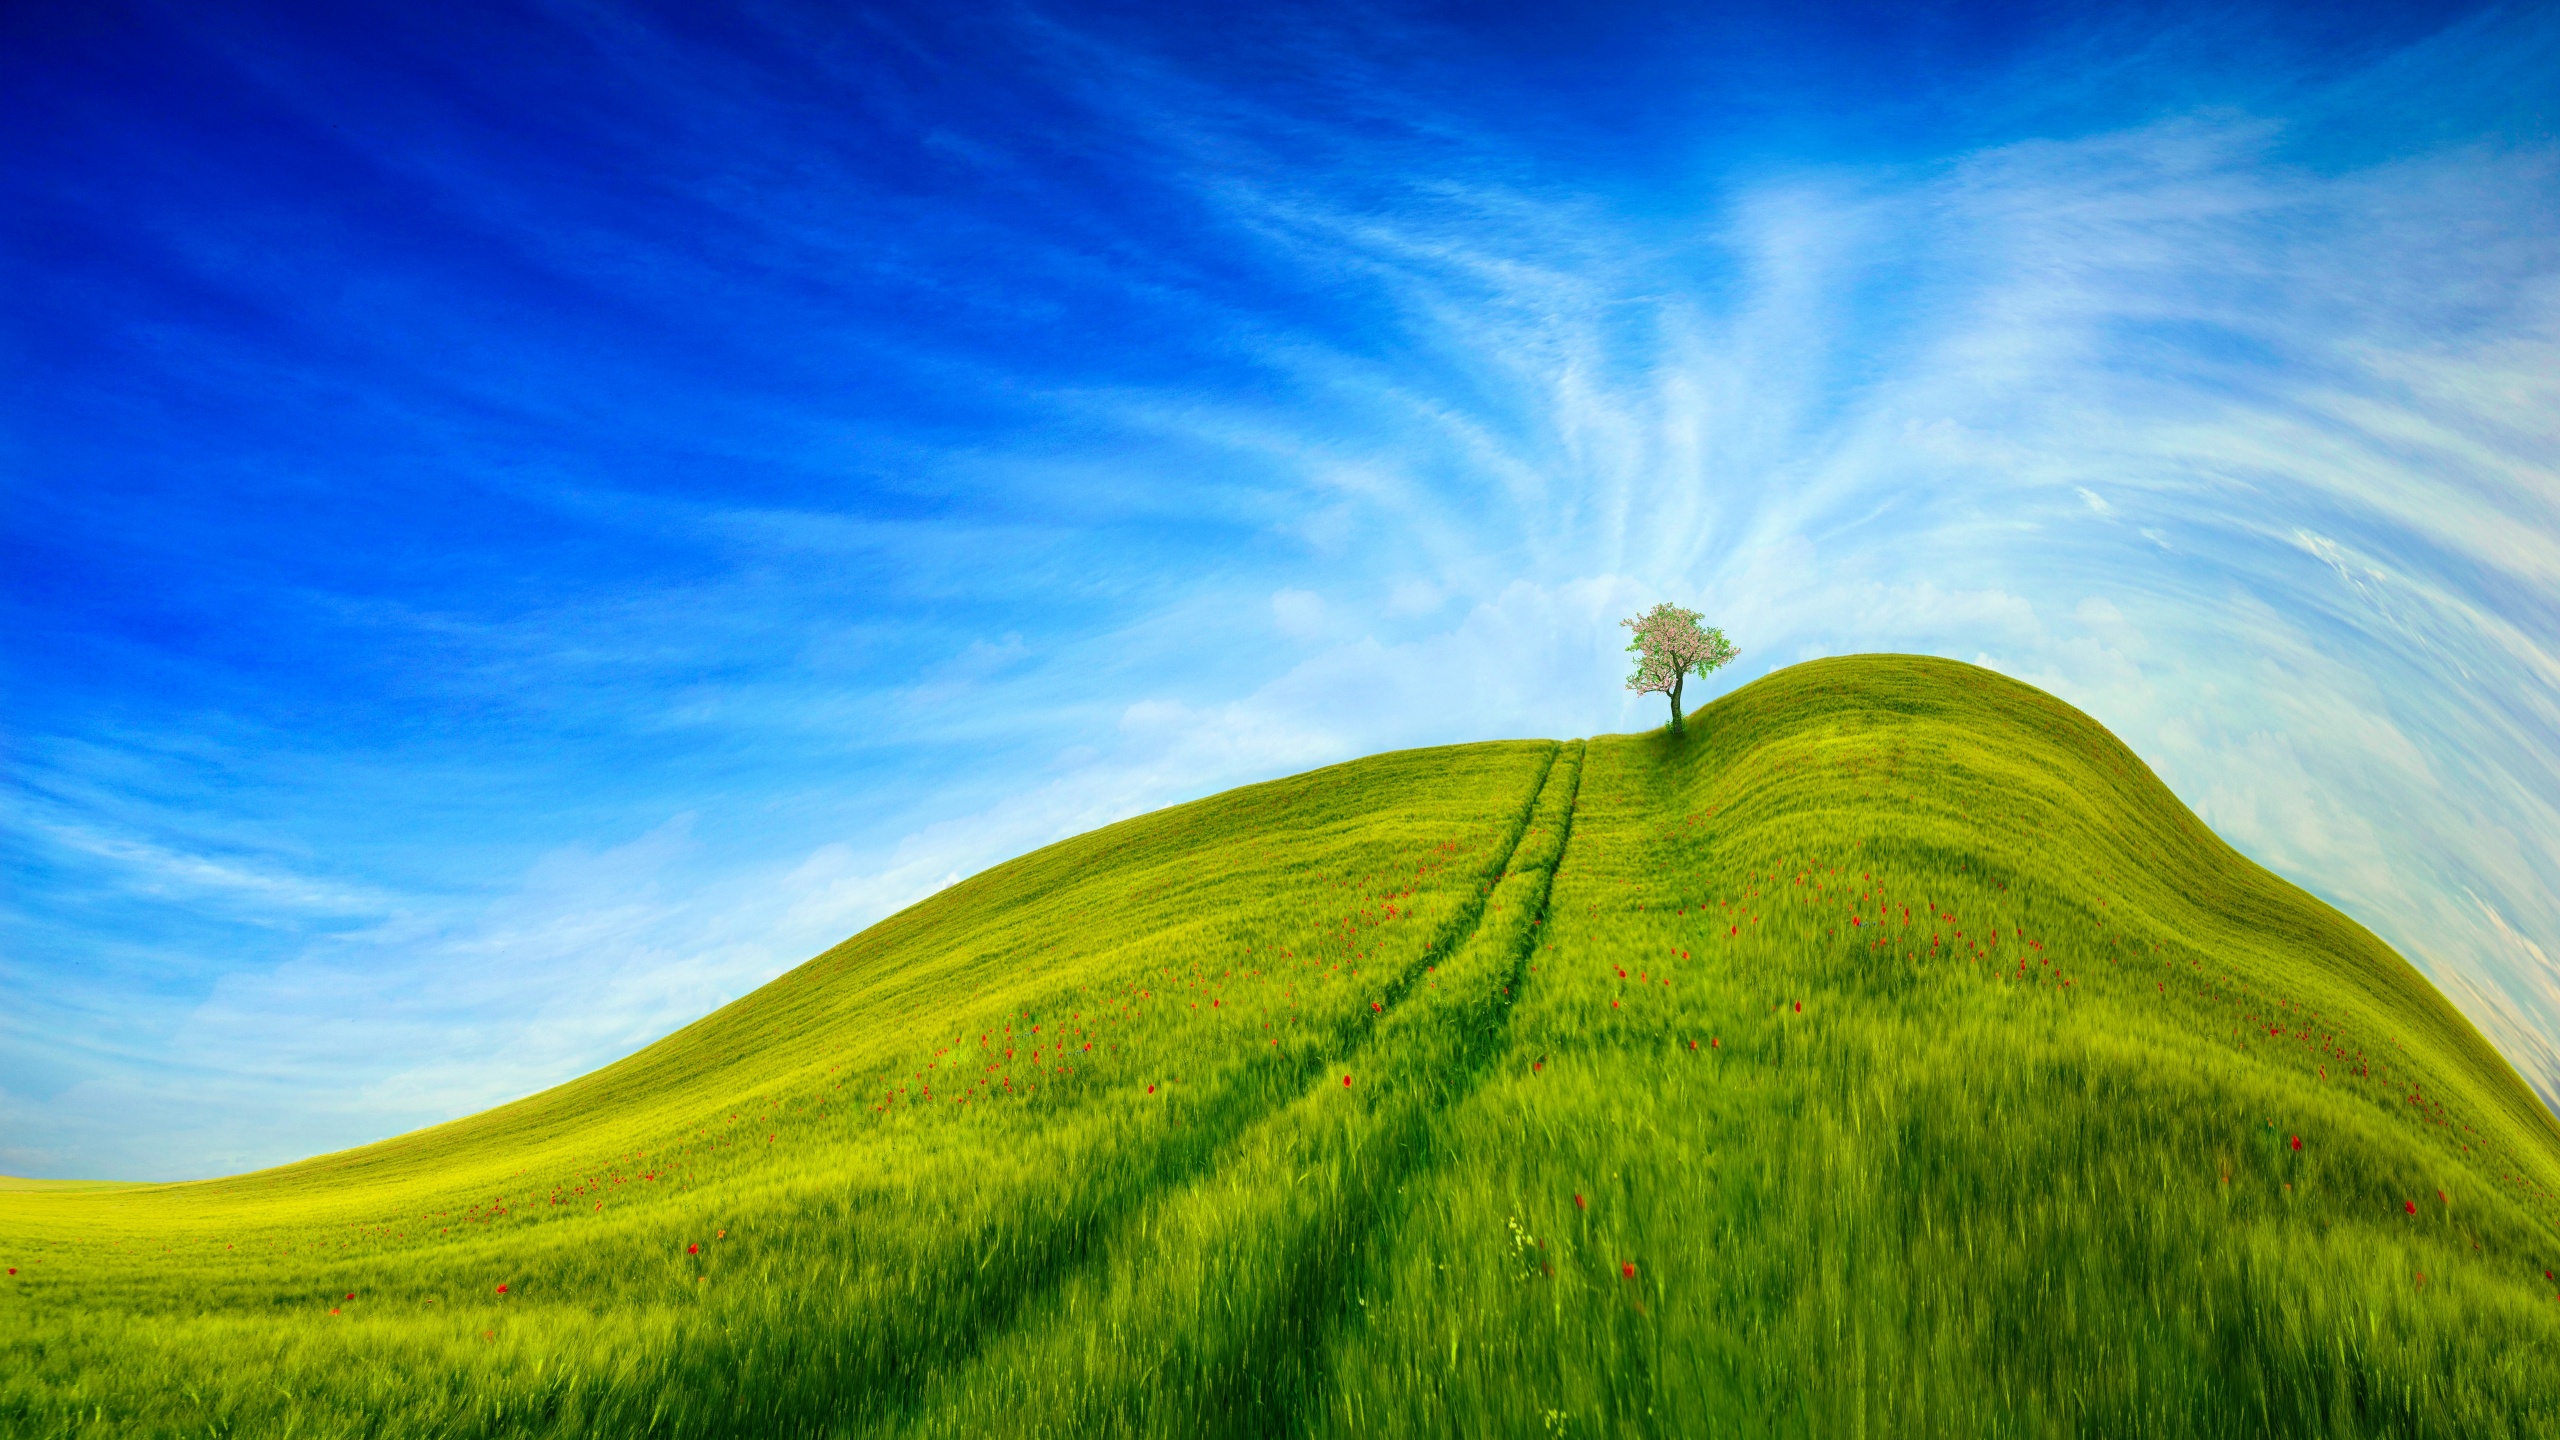 Grass Landscape Wallpaper 4K, Blue Sky, Tree, Clear sky, Beautiful